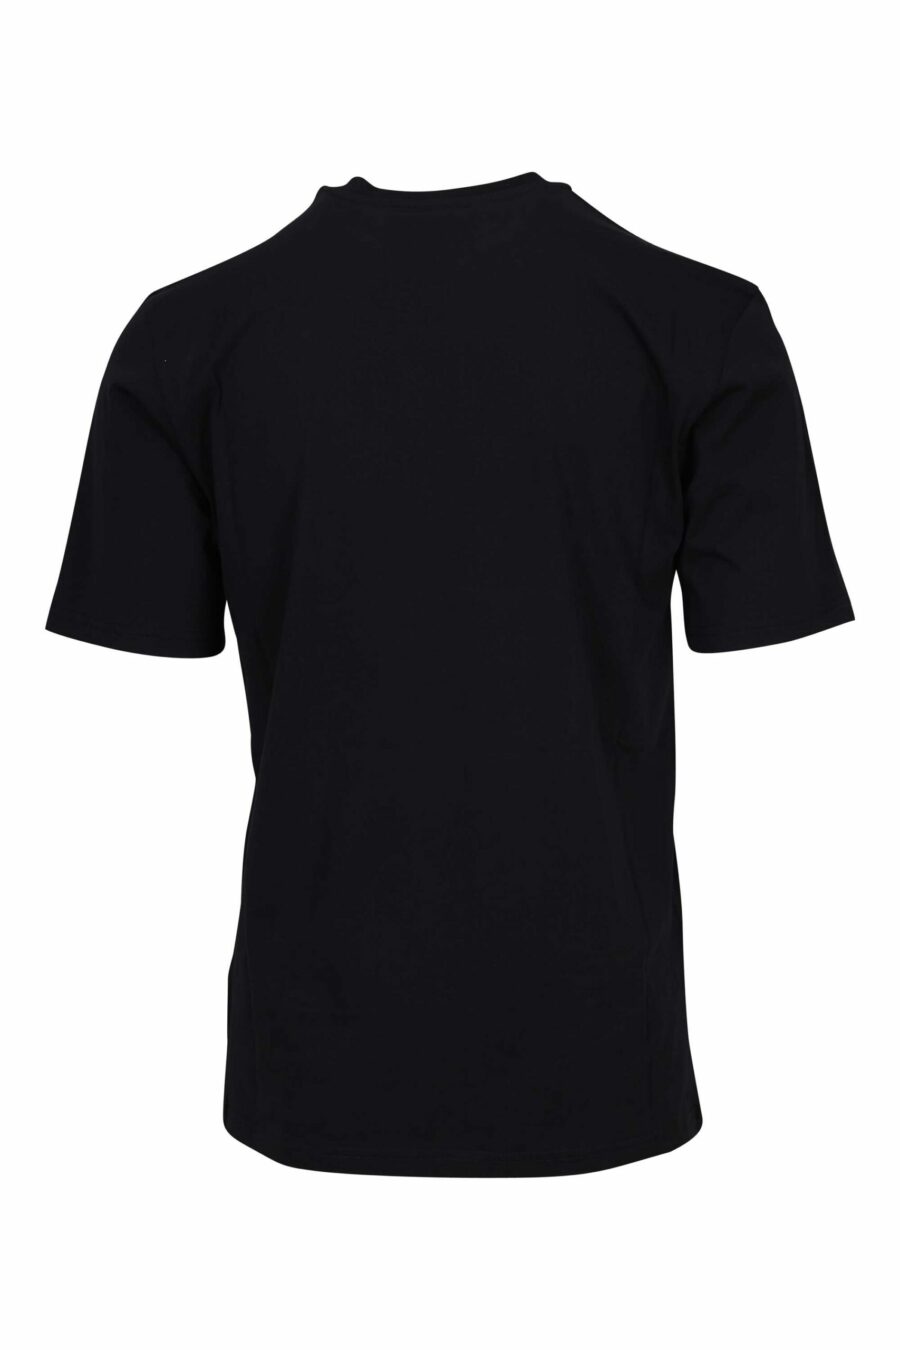 T-shirt noir en coton biologique "100% pure moschino" - 667113765150 1 échelle